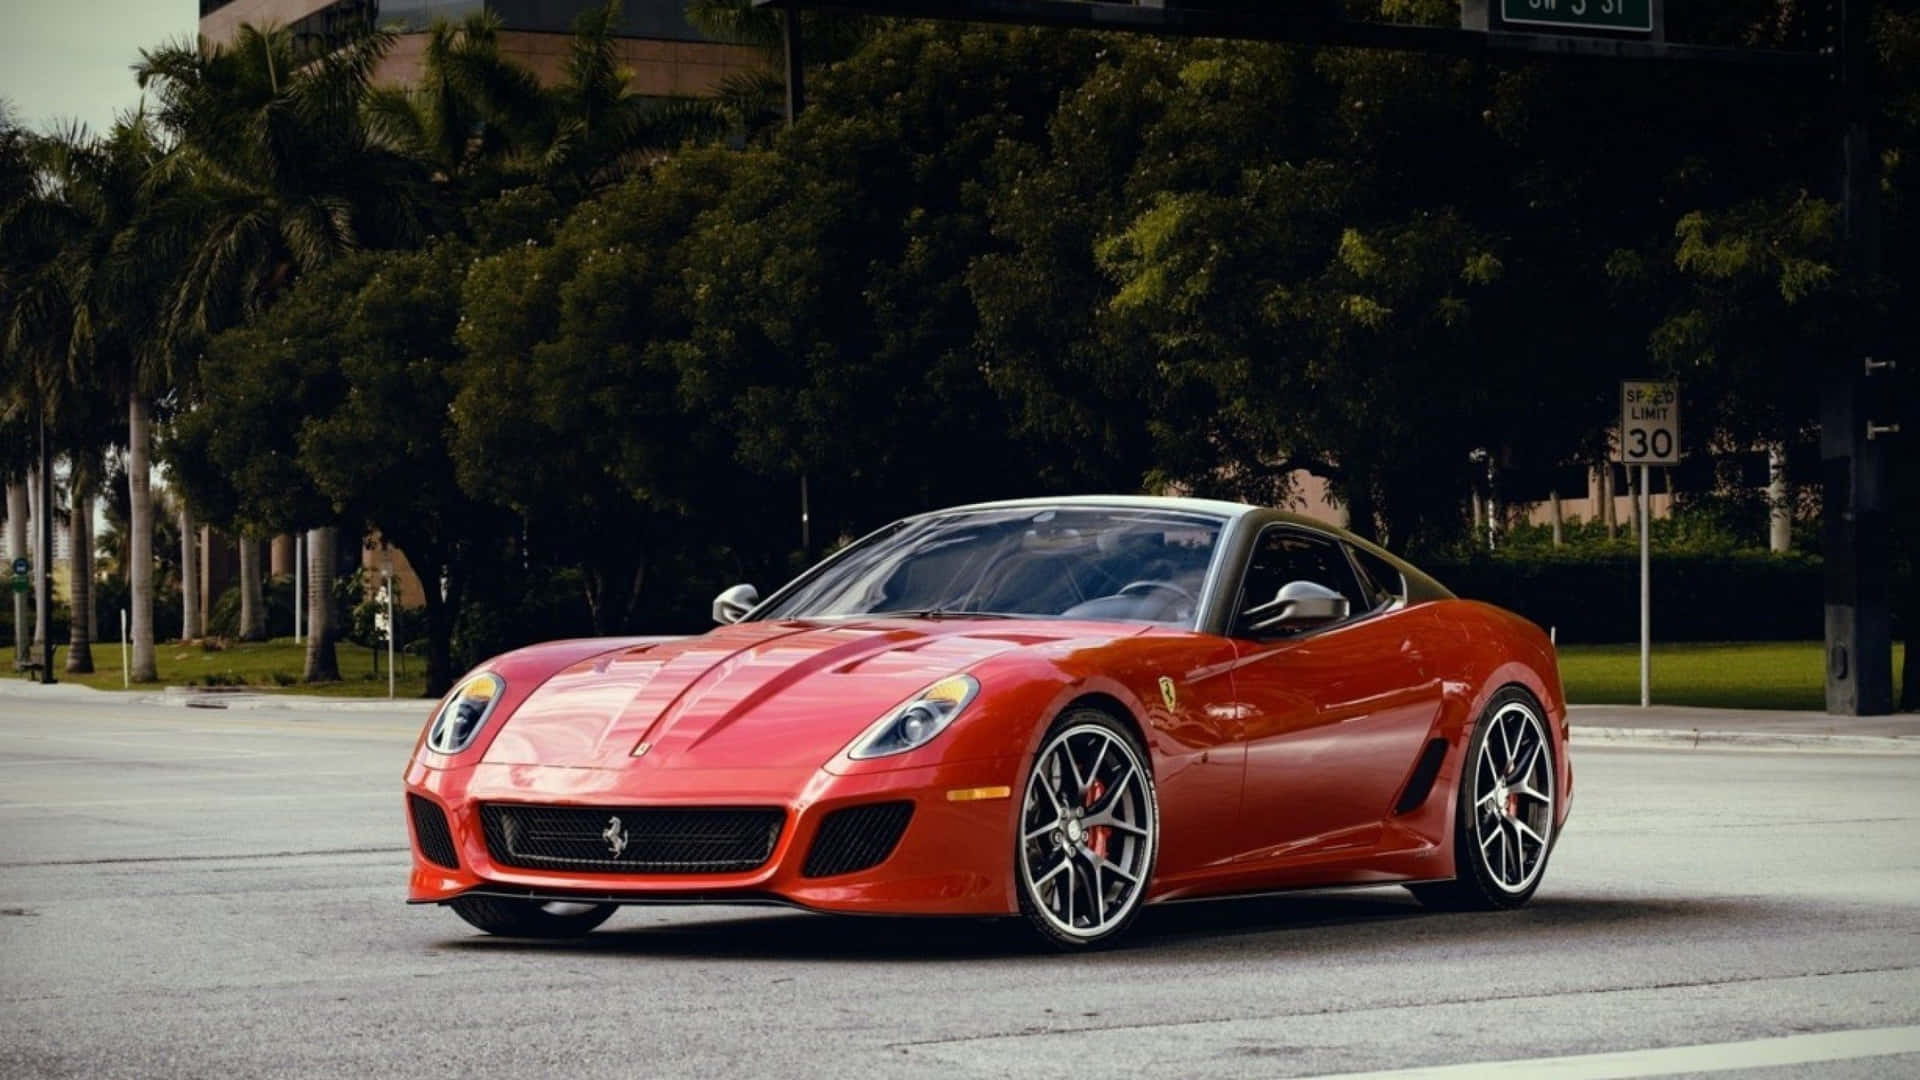 Sleek Ferrari 599 GTB Fiorano in Motion Wallpaper